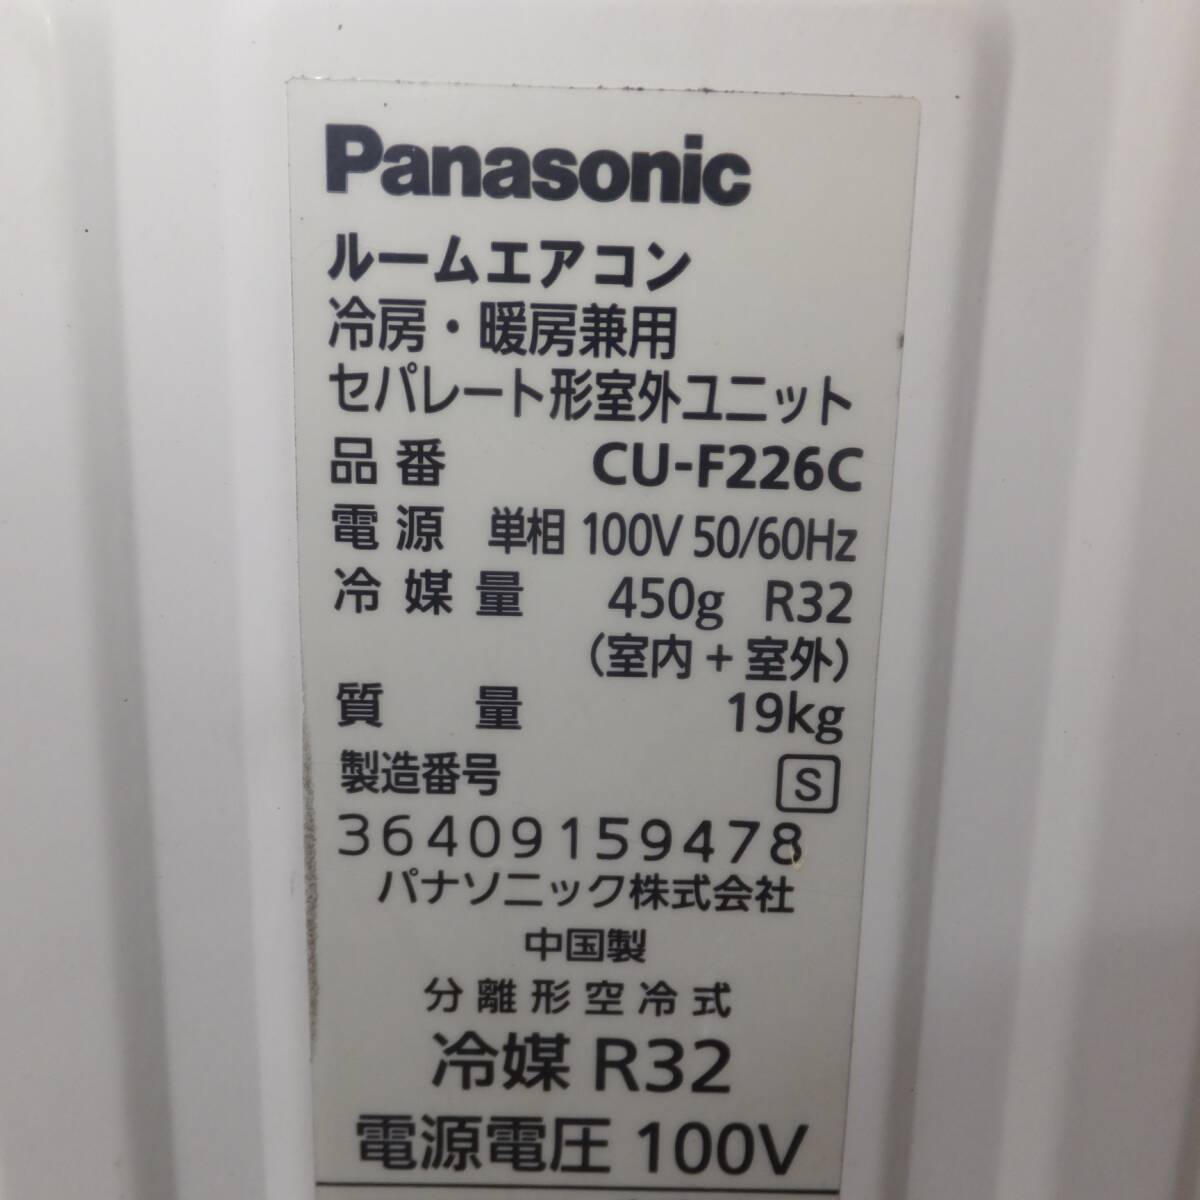  Gifu departure * Panasonic Panasonic 2016 год производства салон кондиционер CS-226CFR-W 100V 50/60Hz. есть доска отсутствует *